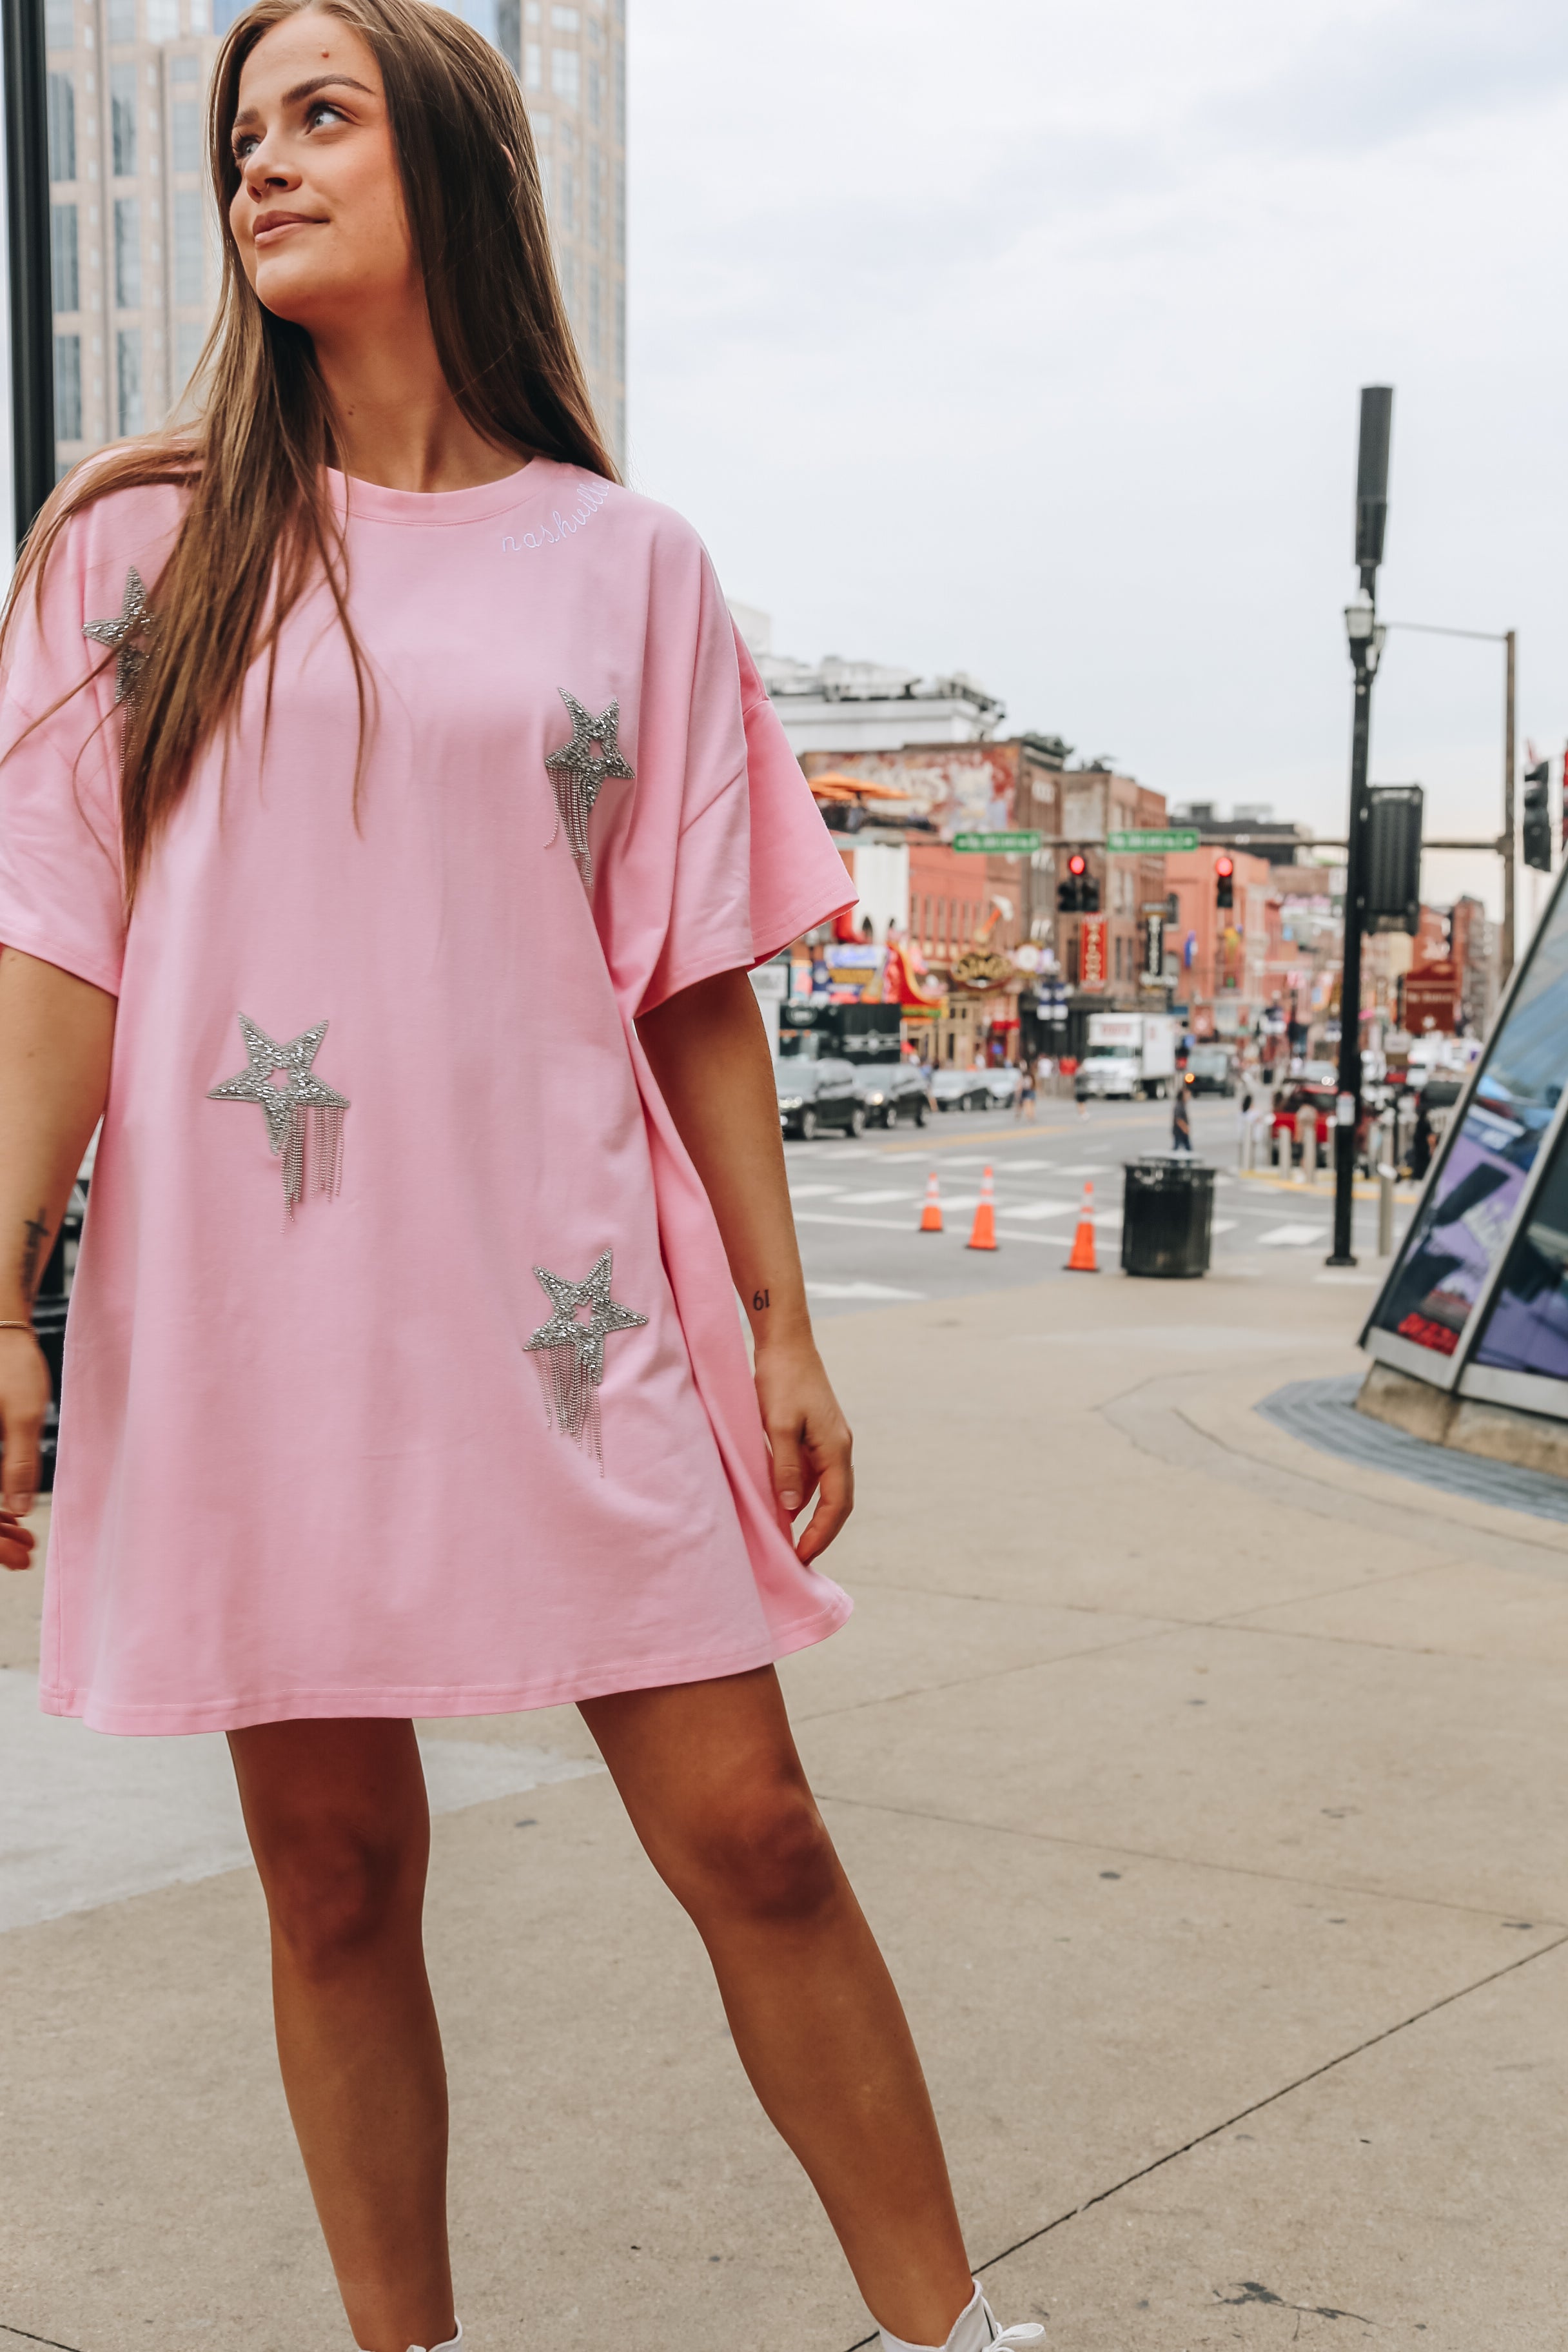 Star Struck Shirt Dress [Pink]